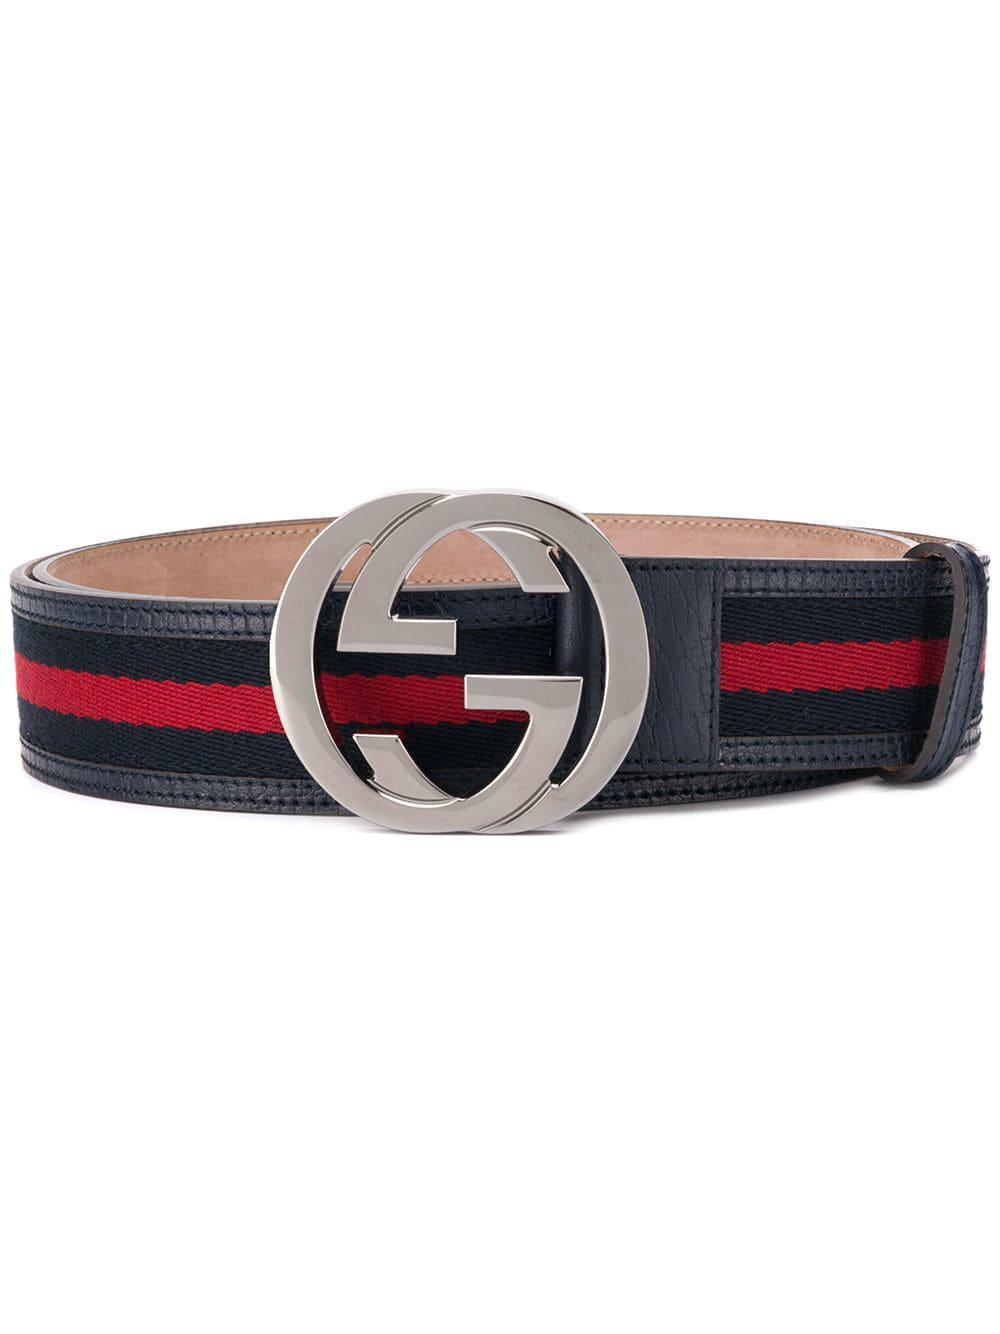 red blue gucci belt